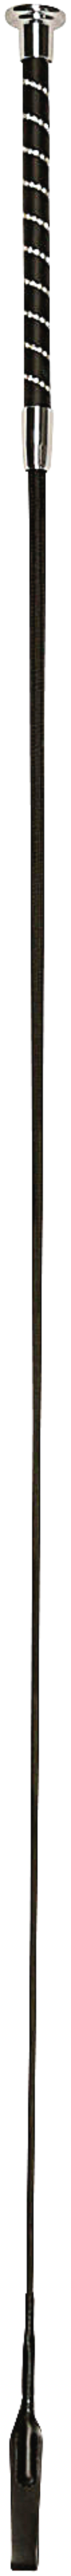 Dressurgerte Glitzer mit Schlag schwarz 110 cm